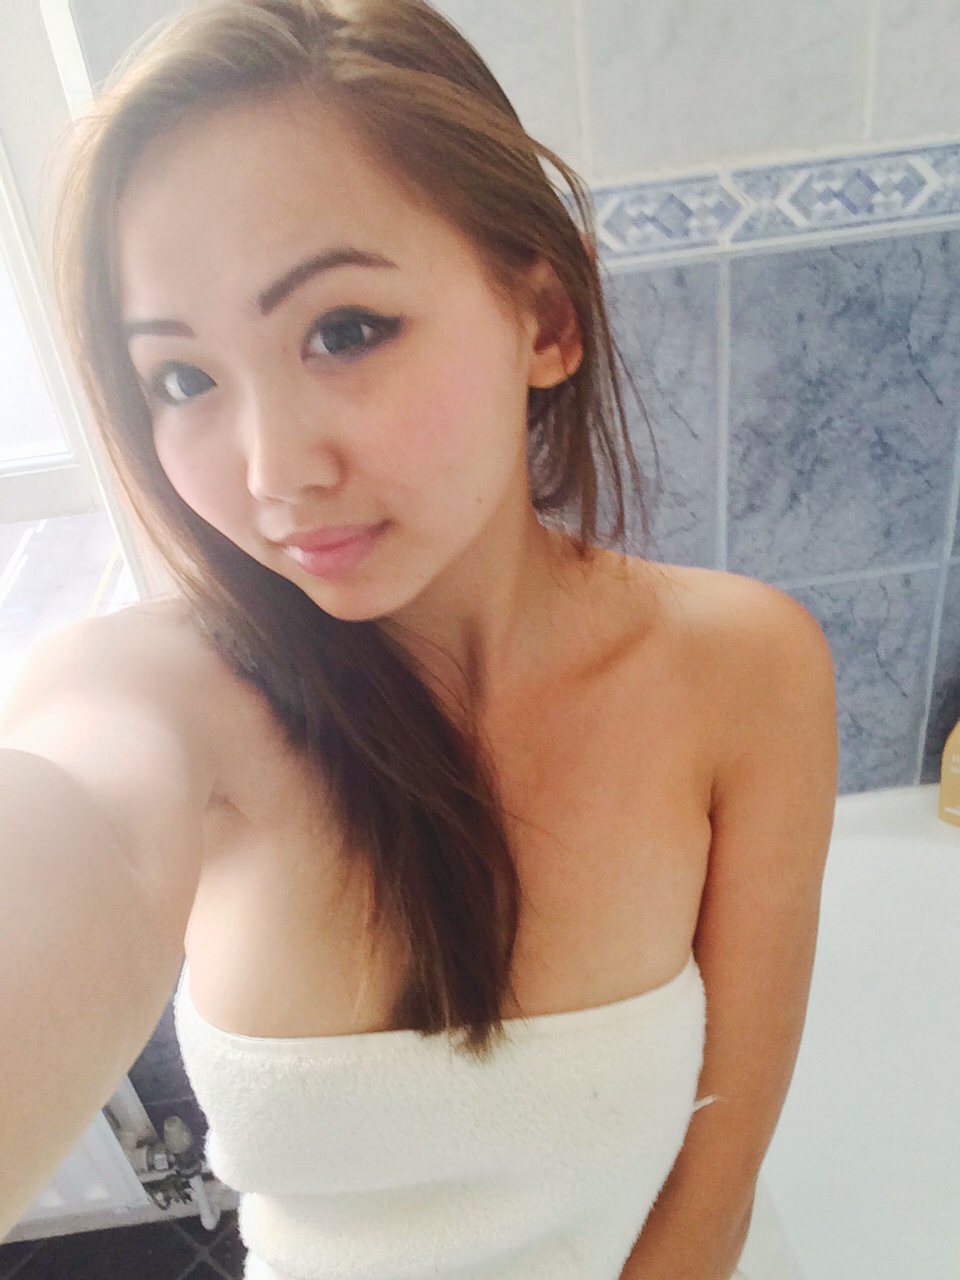 Asian teen nudes shower